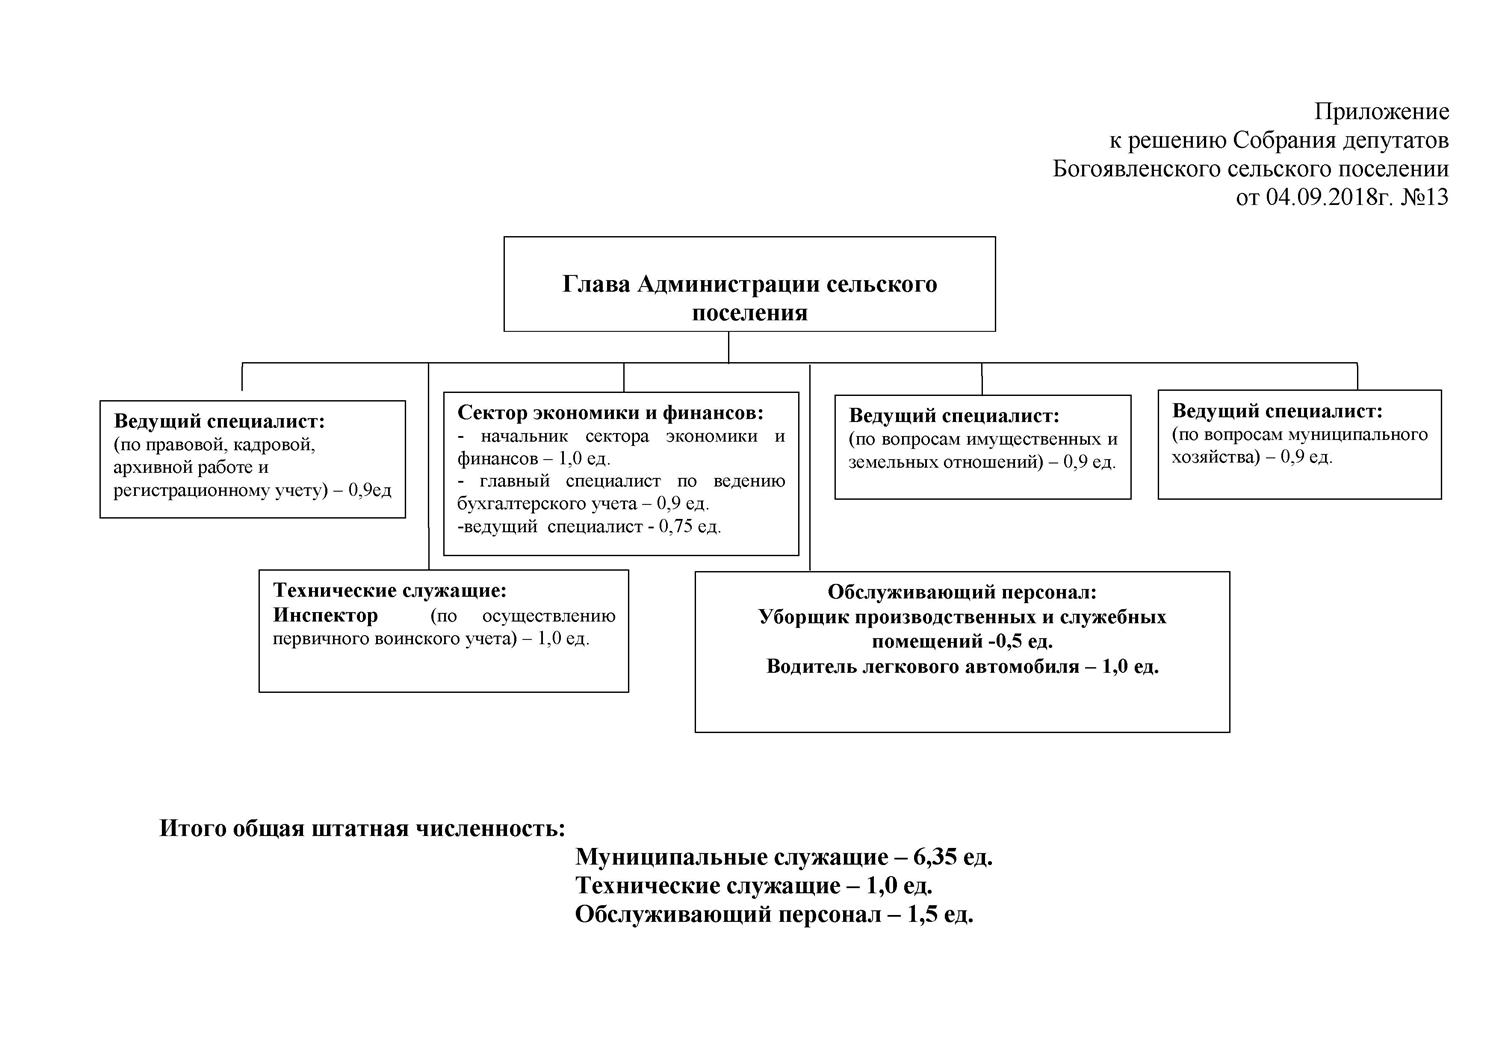 Структура администрации Богоявленского сельского поселения